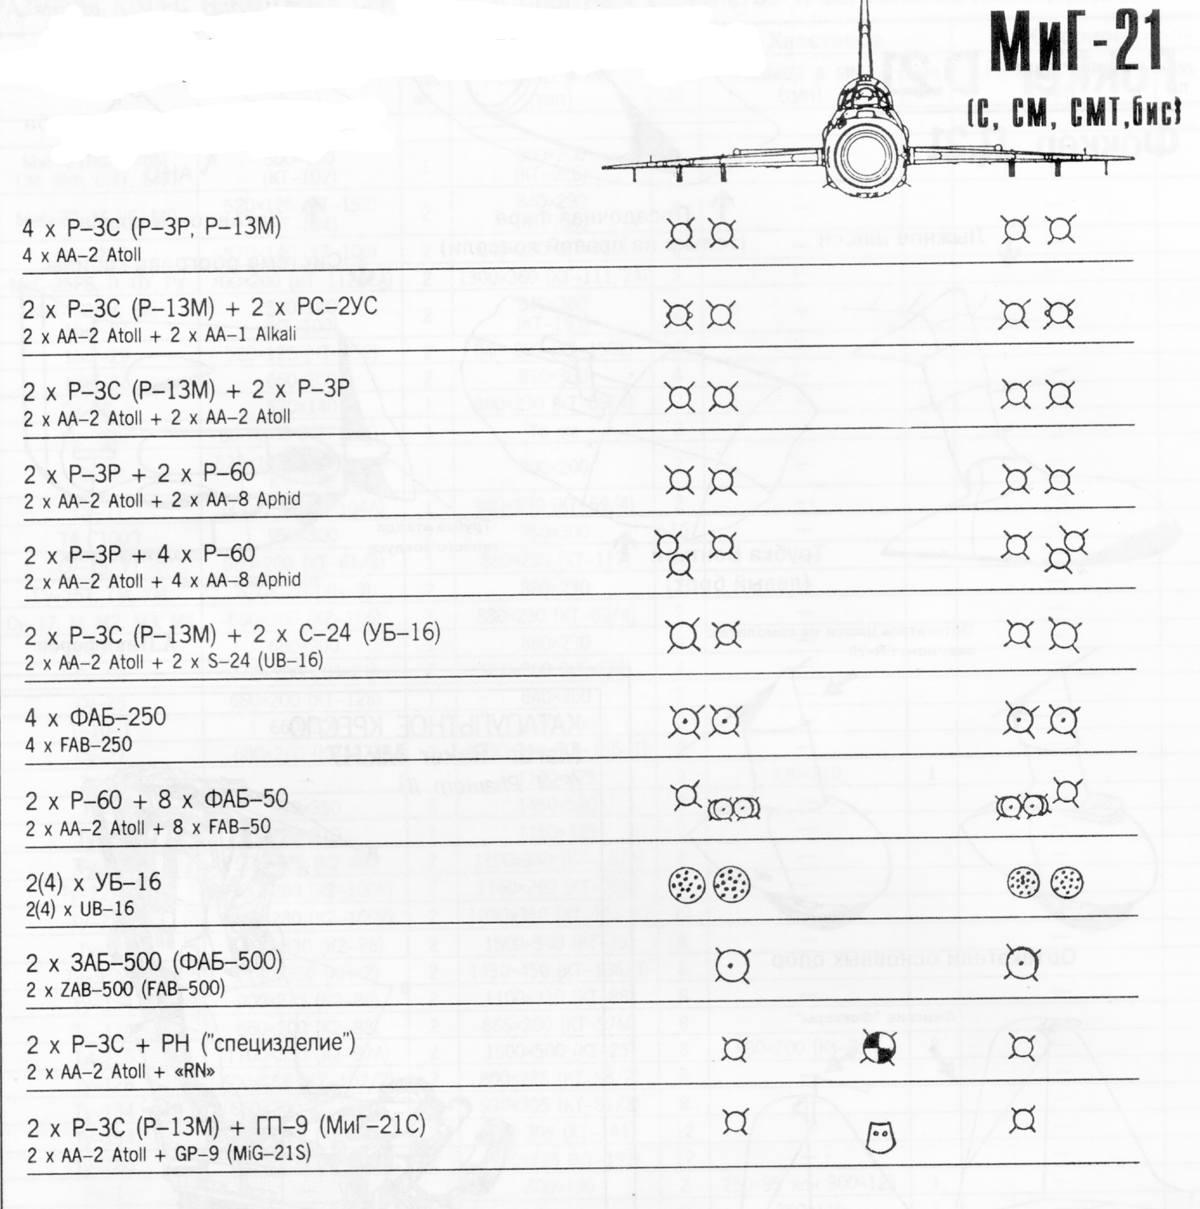 Многоцелевой истребитель МиГ-21: история создания, описание и характеристики